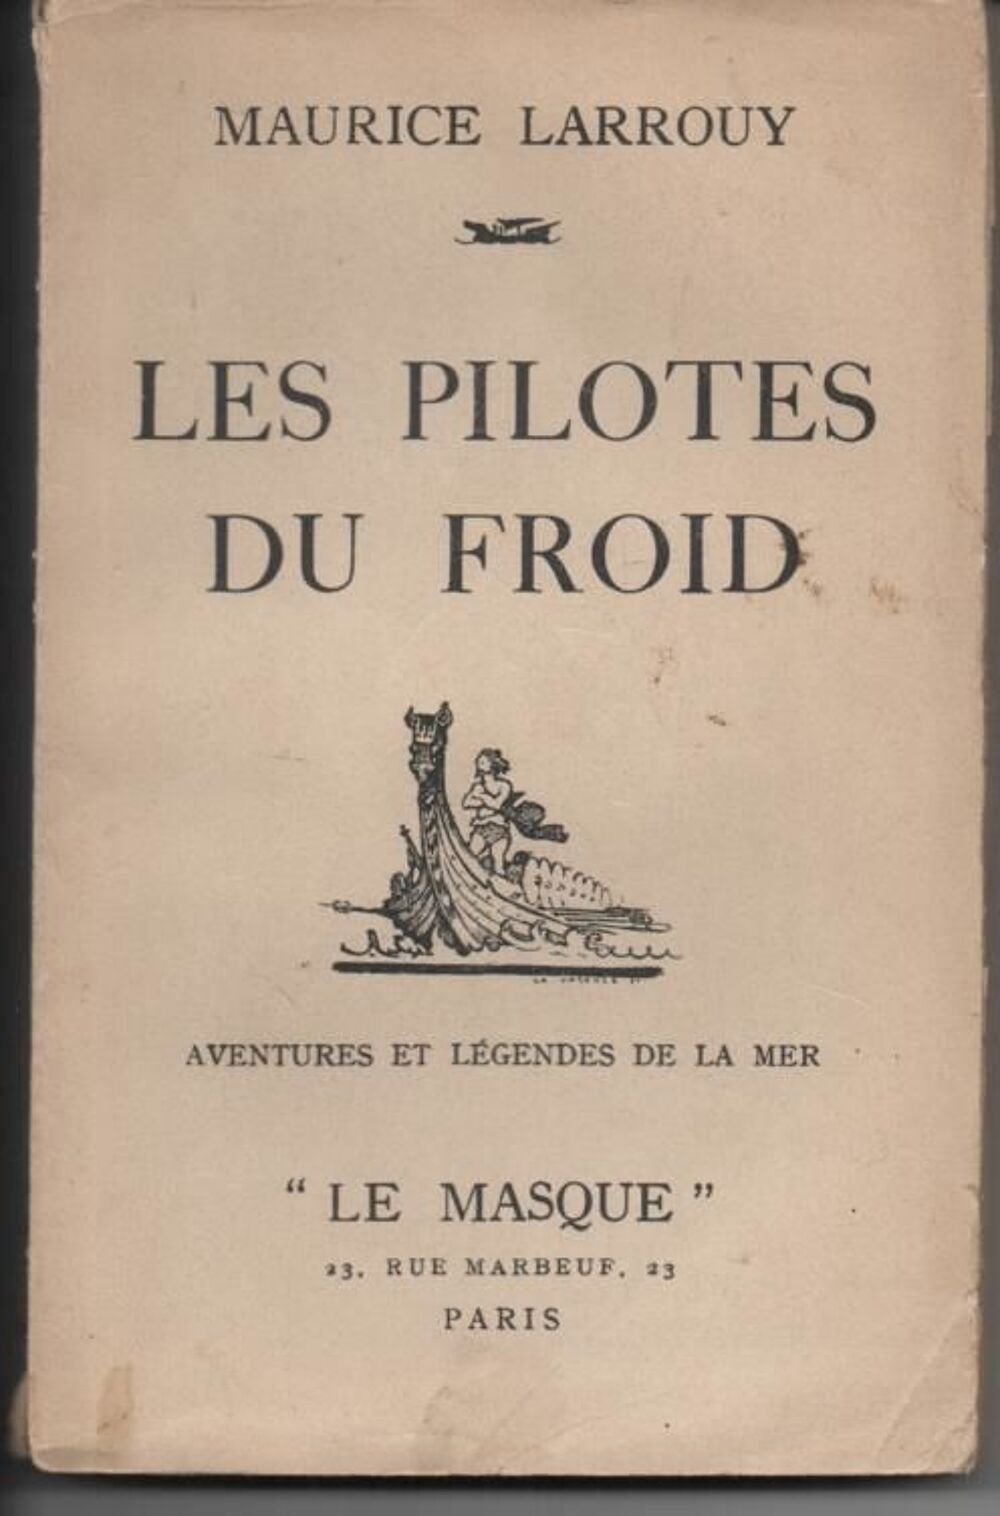  Maurice LARROUY Les pilotes du froid - LE MASQUE - 1934 Livres et BD